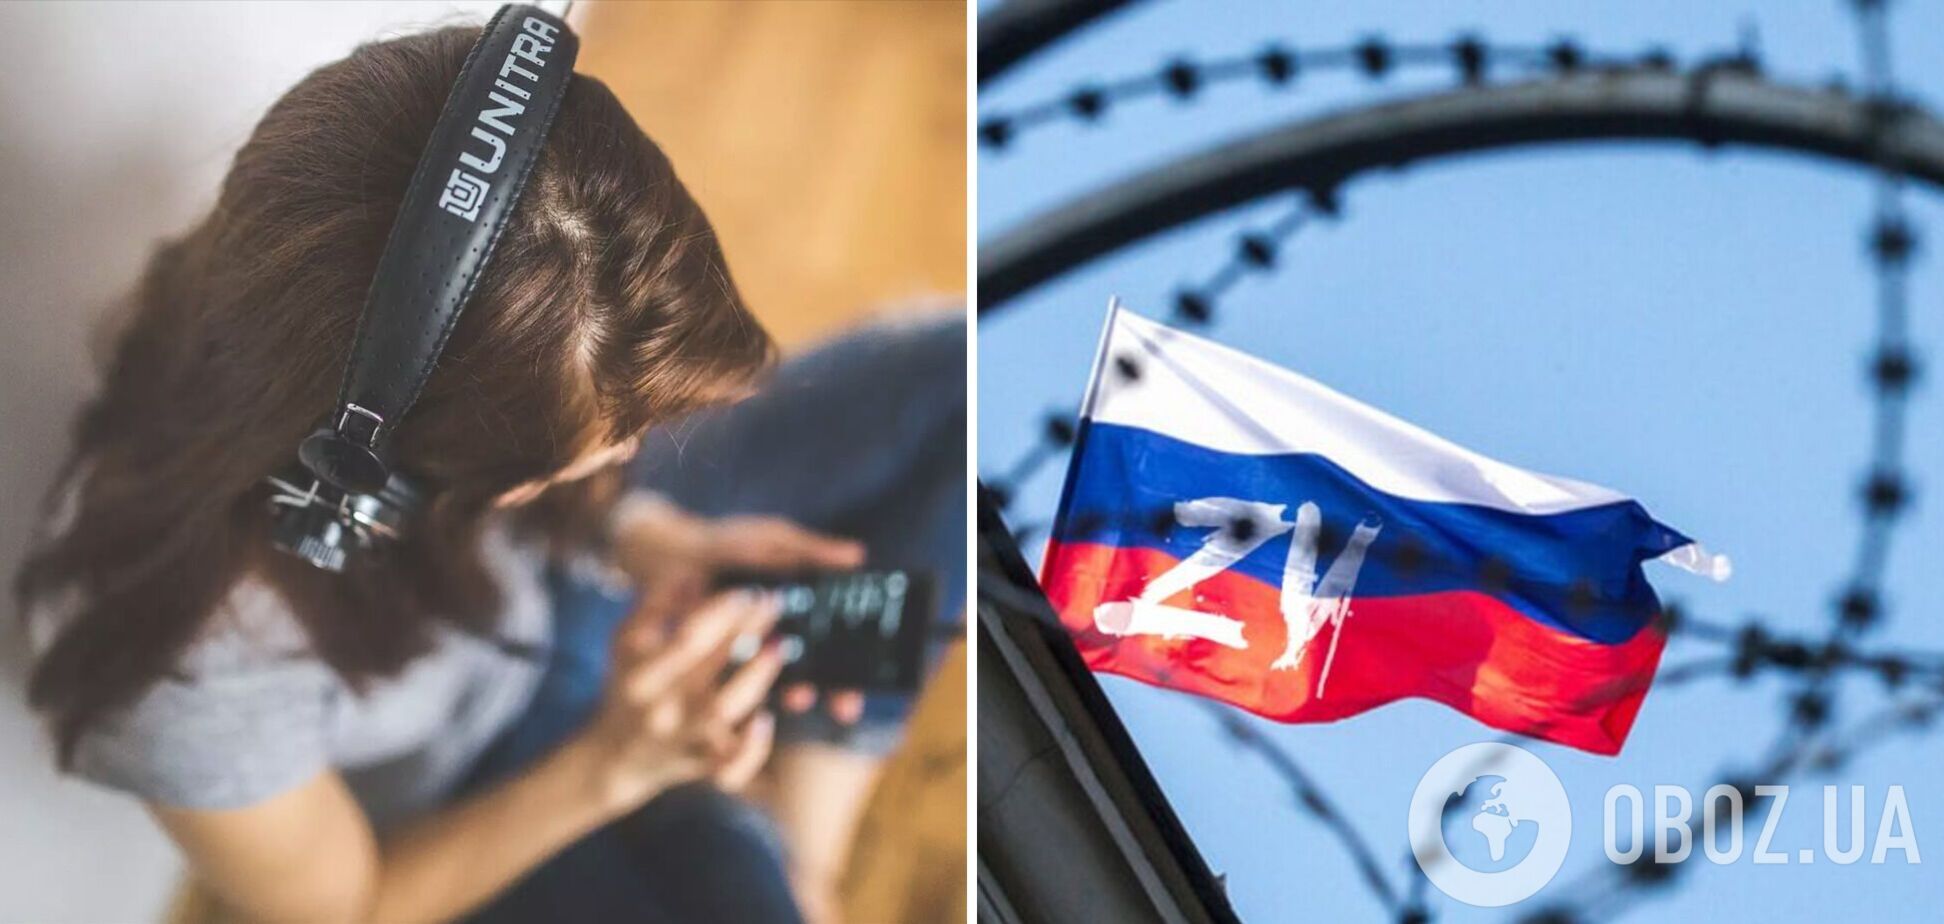 Украинцы вывели в топ на Spotify трек 'Да, я русский', который вышел в день 'выборов' Путина